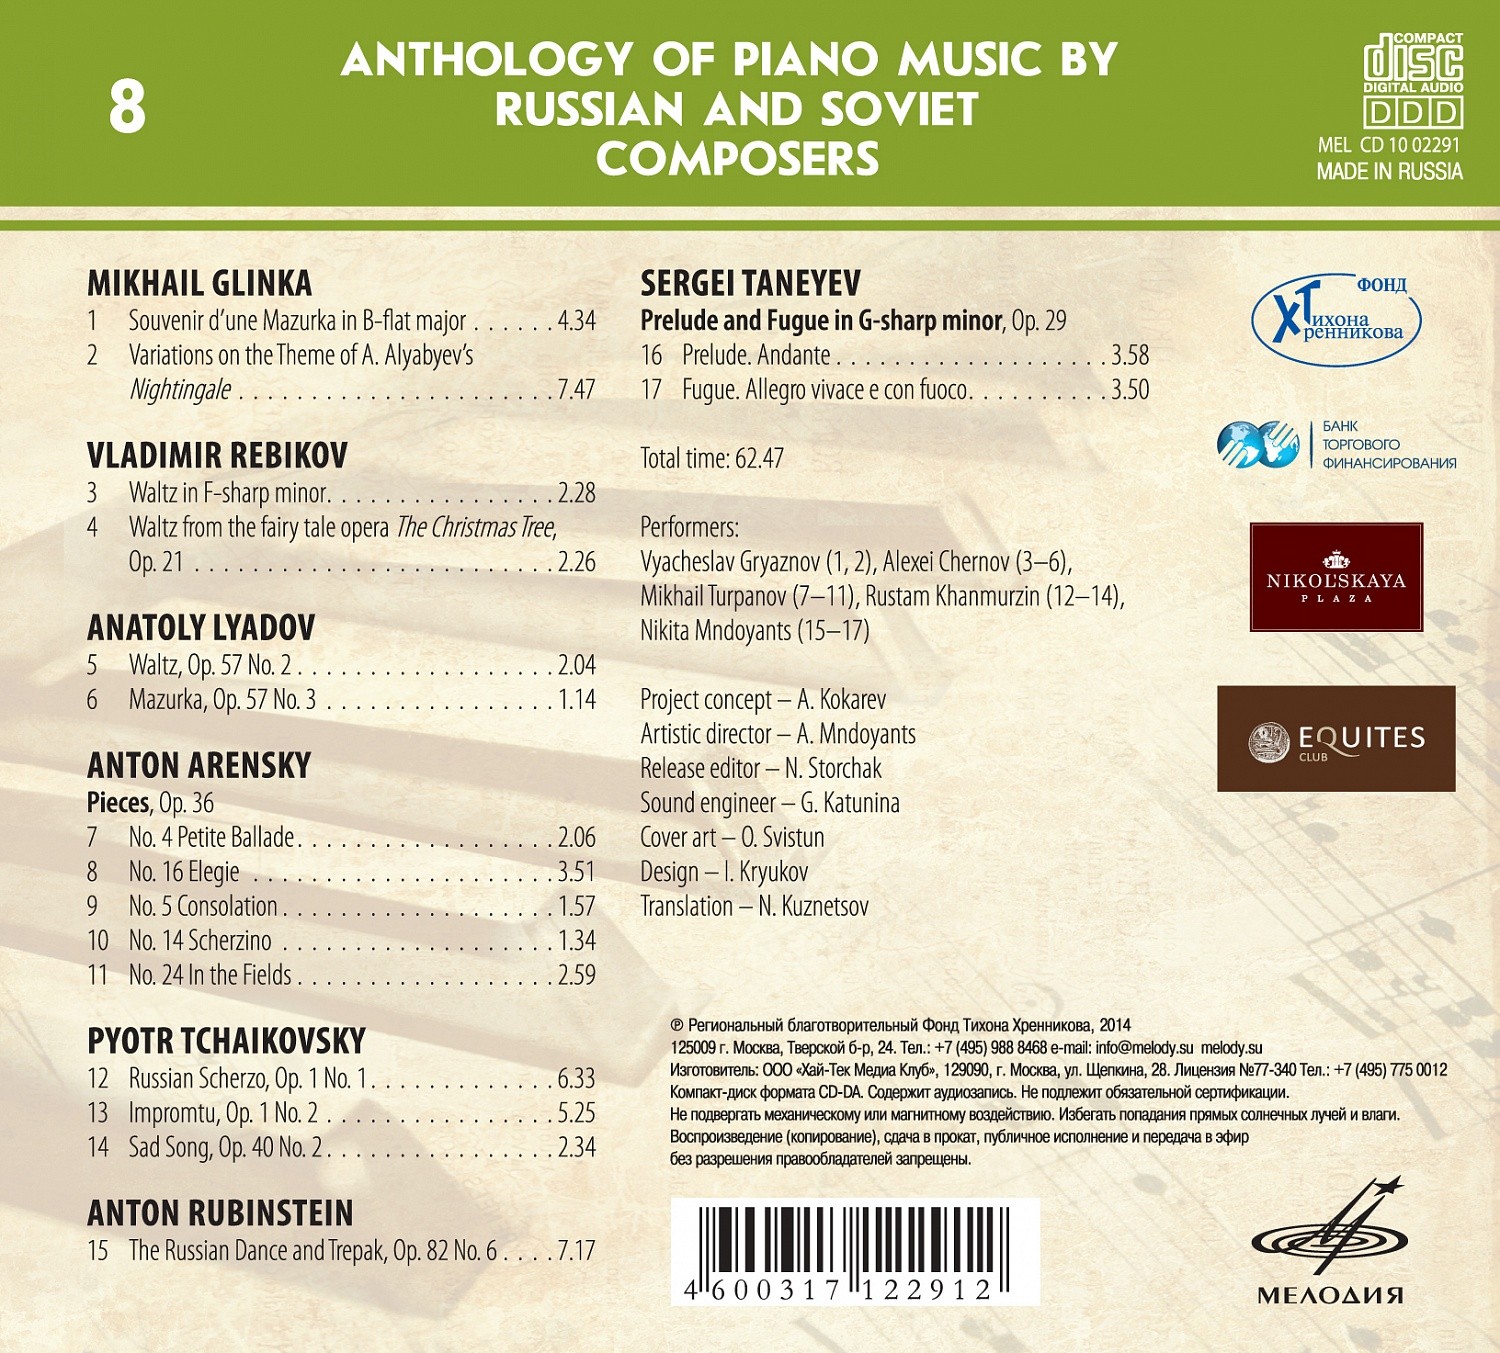 Антология фортепианной музыки русских и советских композиторов. Часть 3 (до 1917 г.) диск 1 (8)